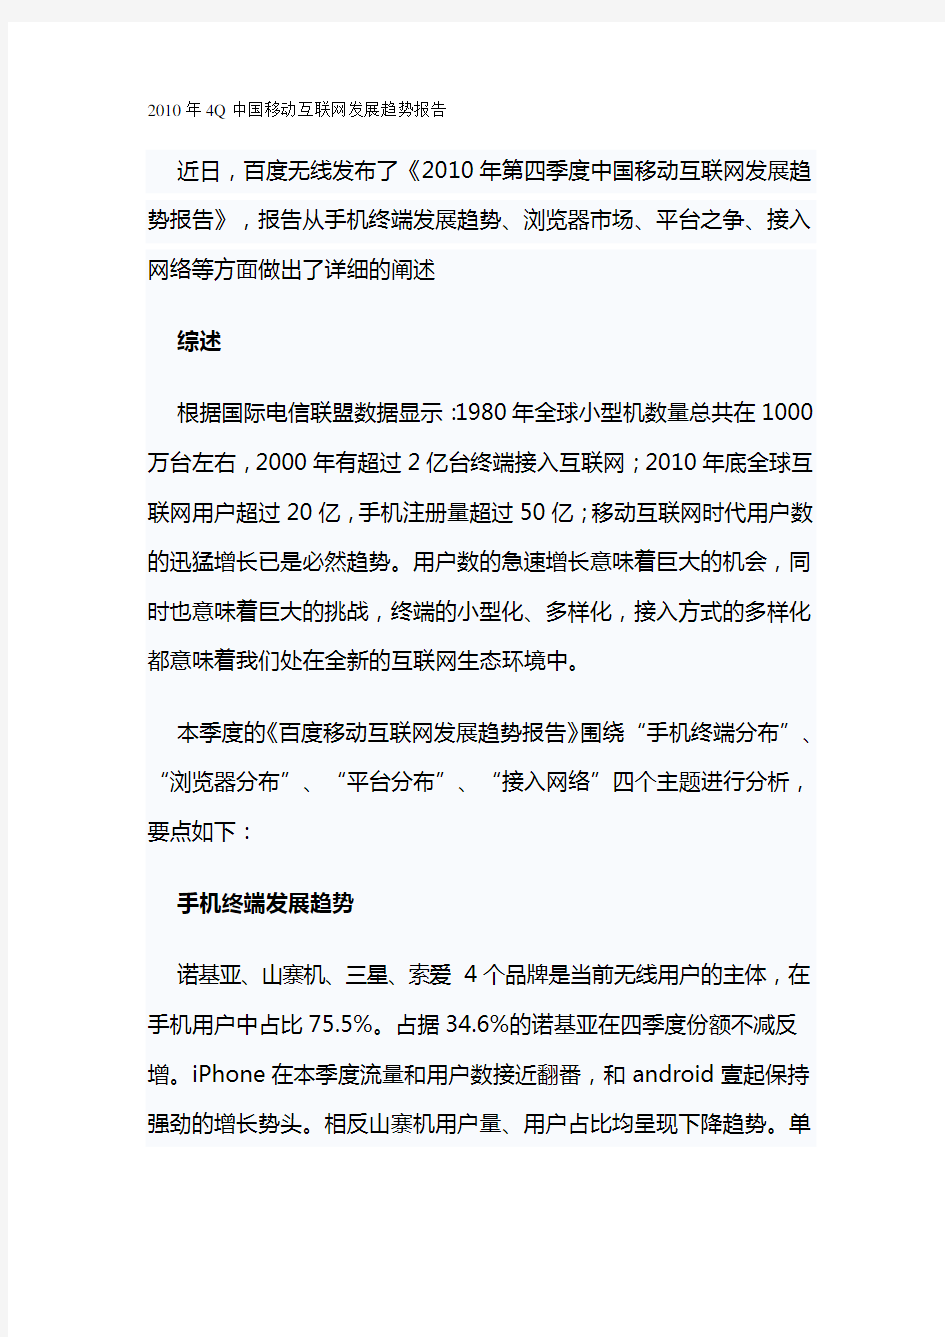 (发展战略)年Q中国移动互联网发展方向报告最全版